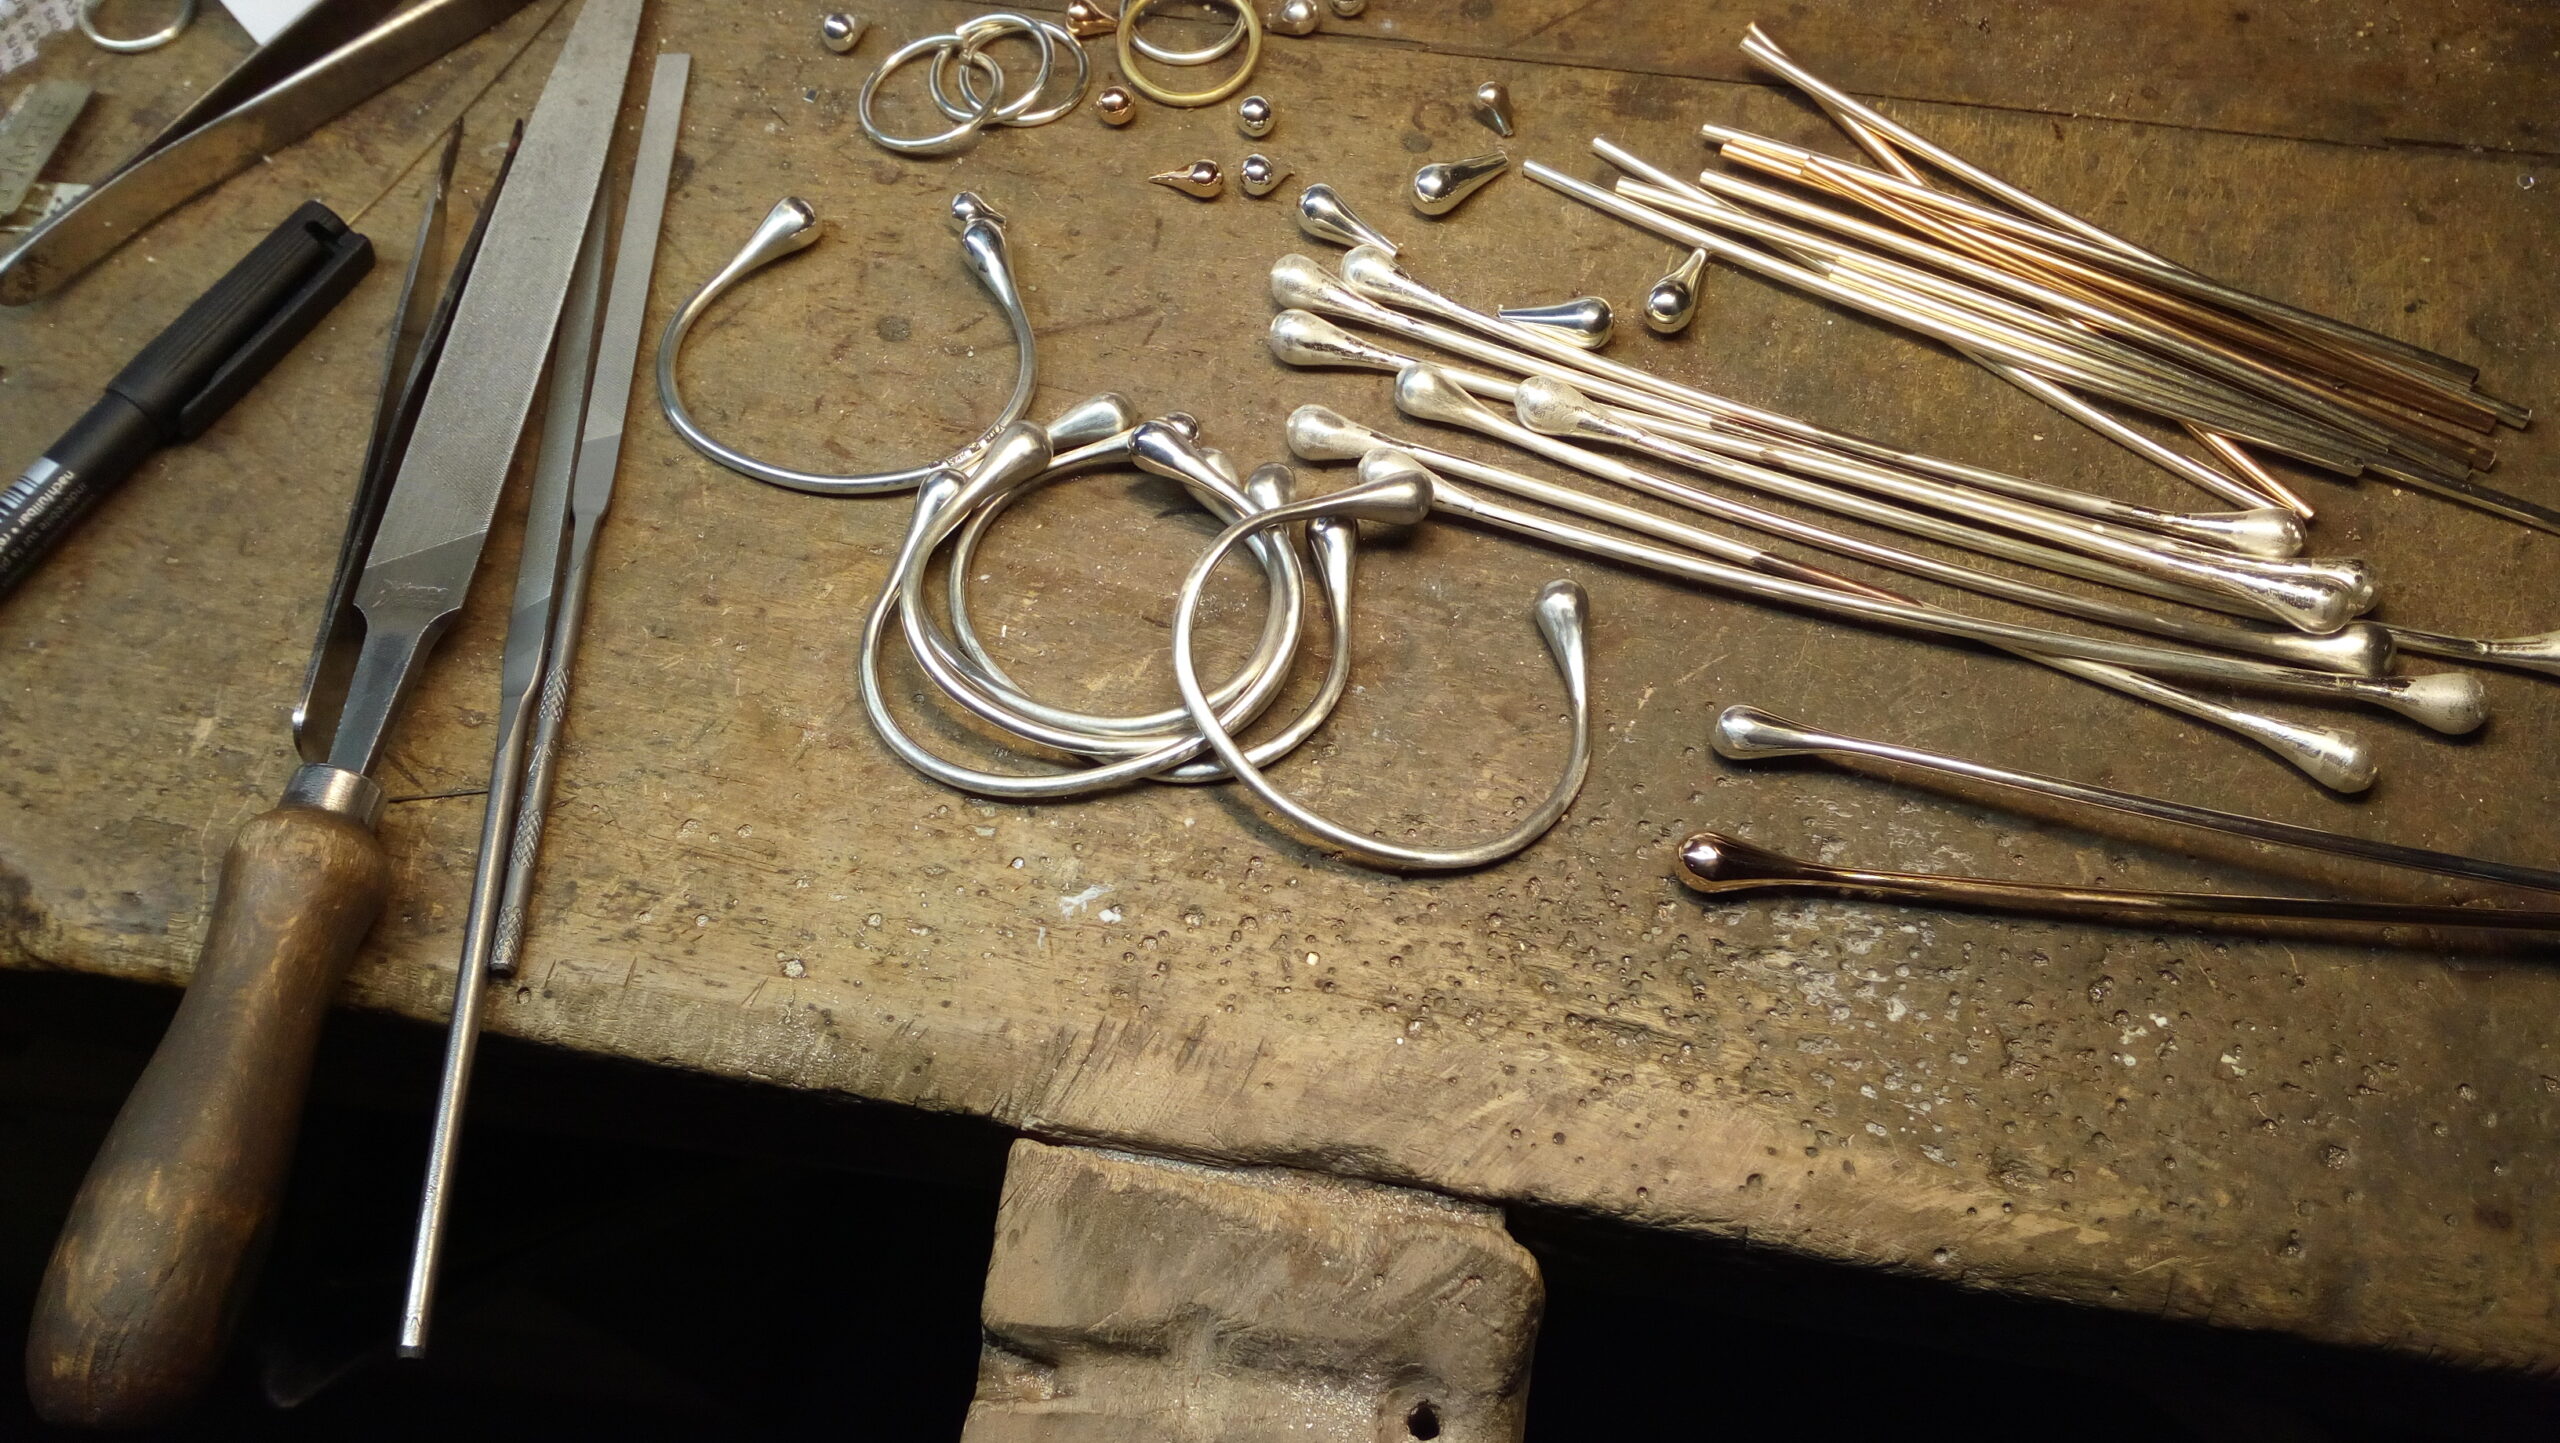 Ett arbetsbord för smyckestillverkning. På bordet ligger diverse verktyg och råmaterial för tillverkning.